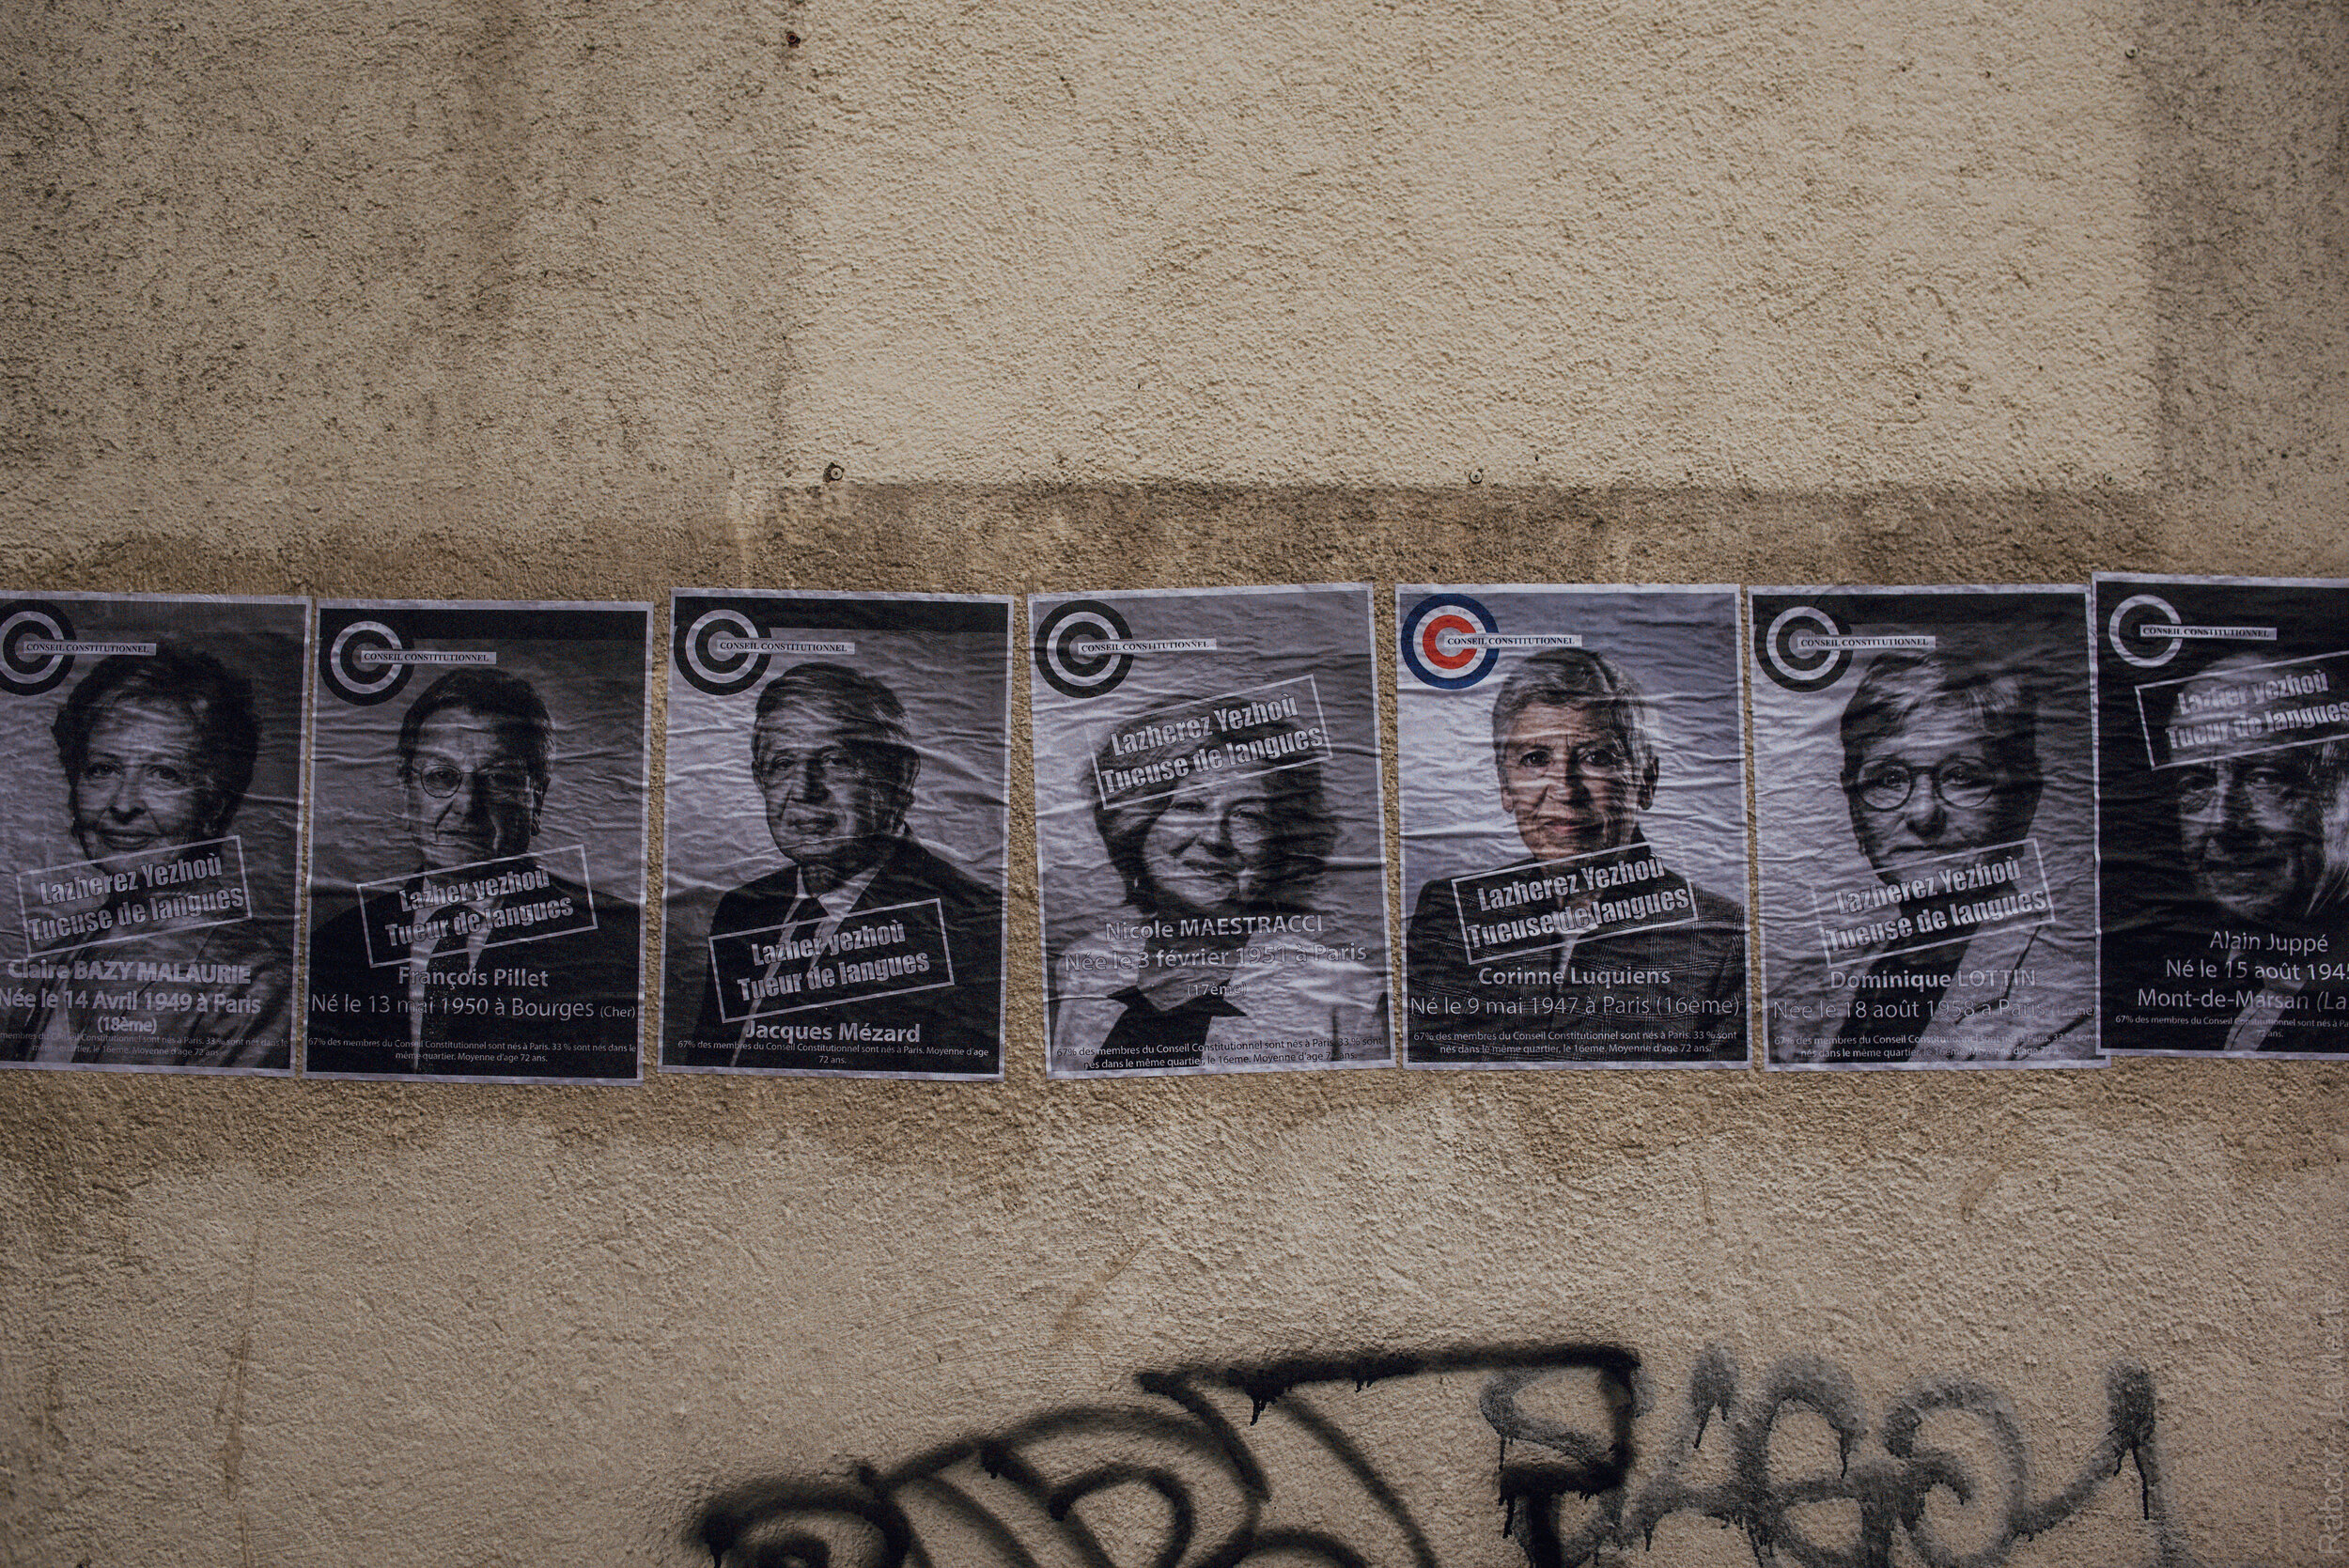  Les affiches des membres du conseil d’état qui ont voté la censure des 2 articles contre la loi Molac sont affiché sur les murs de Guingamp. 